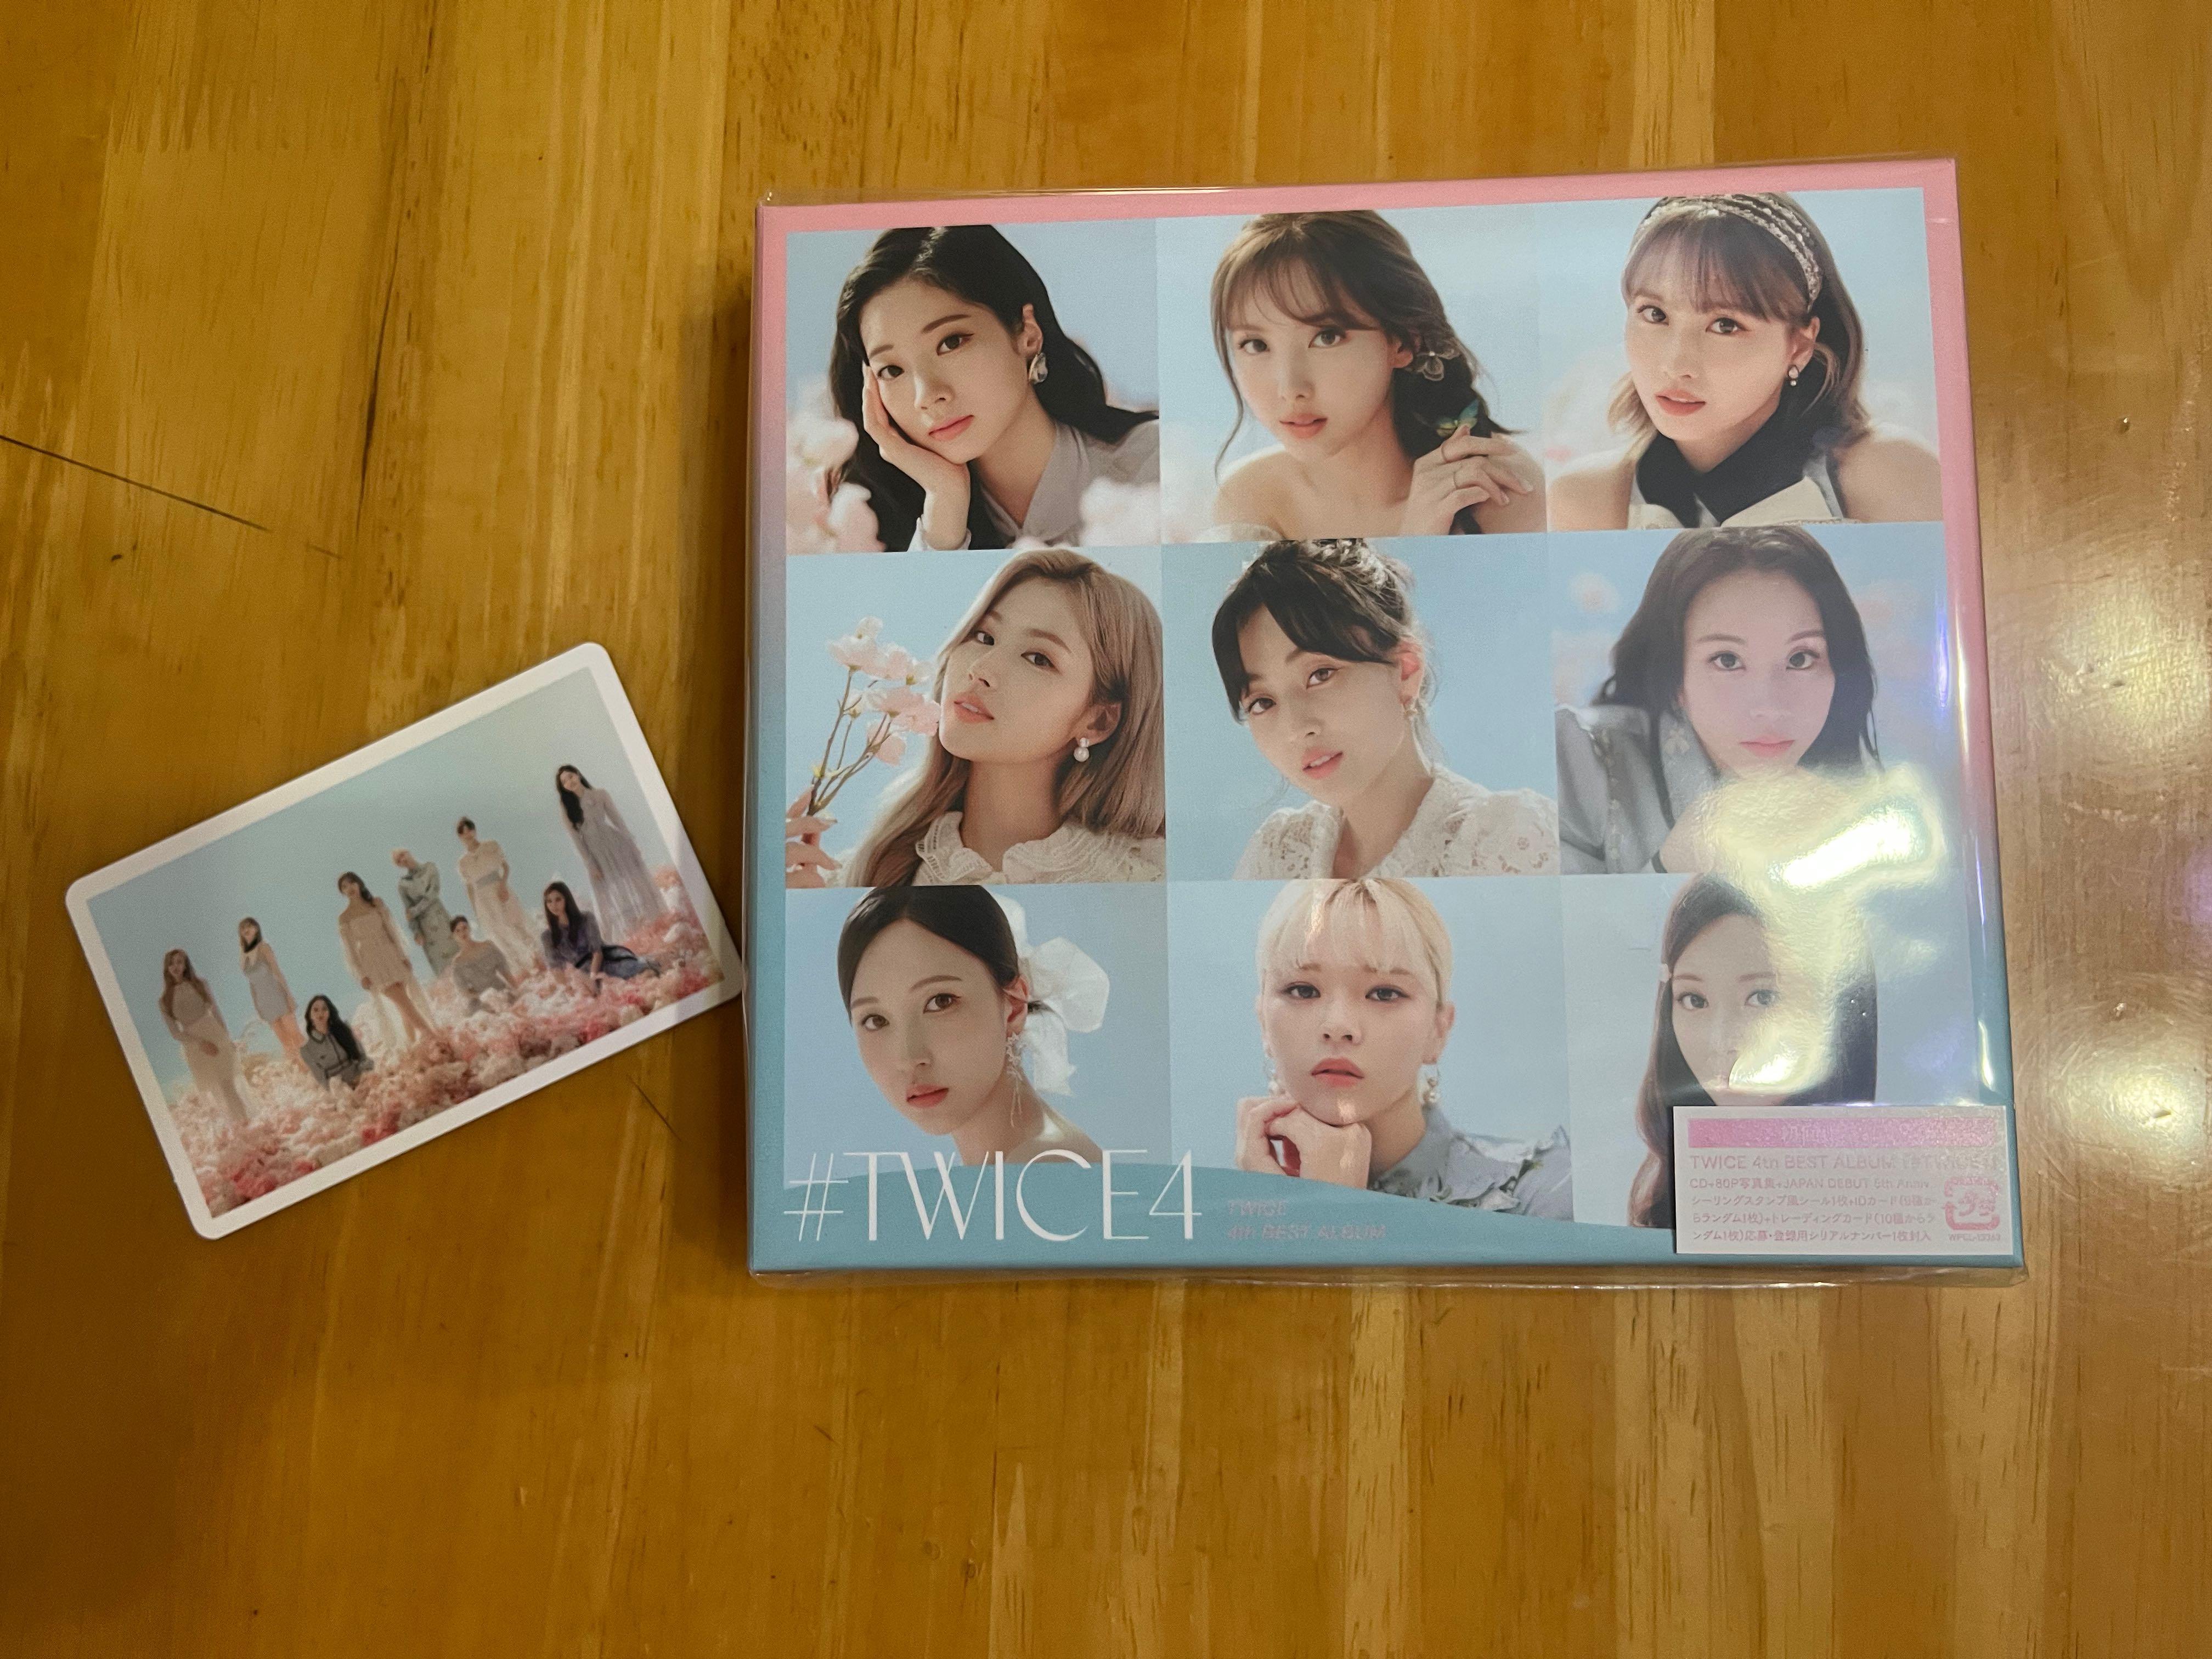 Twice - #TWICE4 初回A盤淨專連團卡, 興趣及遊戲, 收藏品及紀念品, 韓